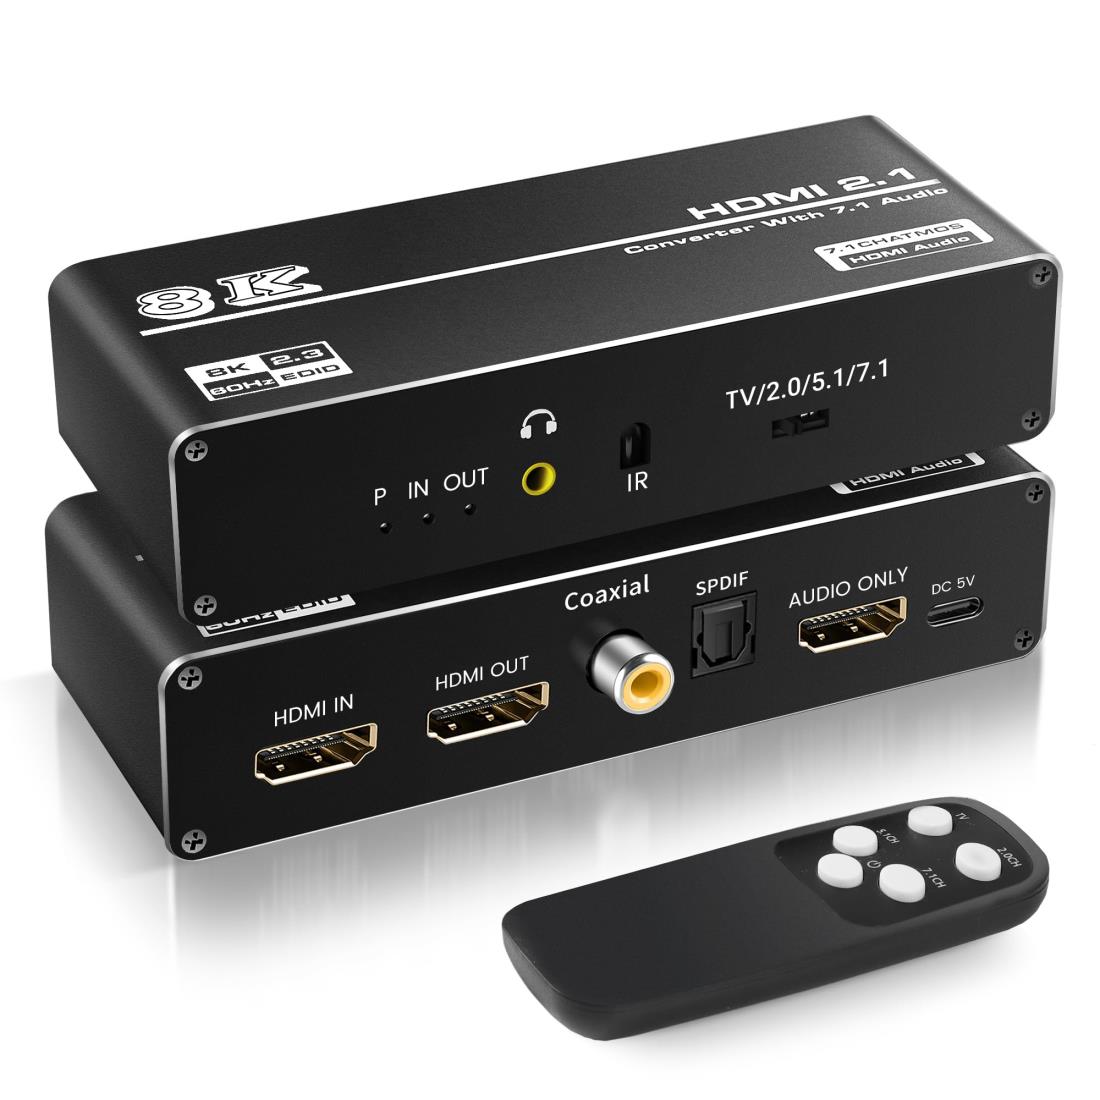 avedio links 8K HDMI音声分離器 4K 120Hz 音声分離機 7.1chサラウンドシステムに接続 音声分離機能搭載 7.1ch HDMIオーディオ 光デジタルSPDIF 同軸 3.5mmオーディオ分離器 HDMI 2.1 HDCP2.3 HDR VRR ノートパソコン/ブルーレイプレーヤー/Fire Stick/PS5/PS4/PS3/Xboxに